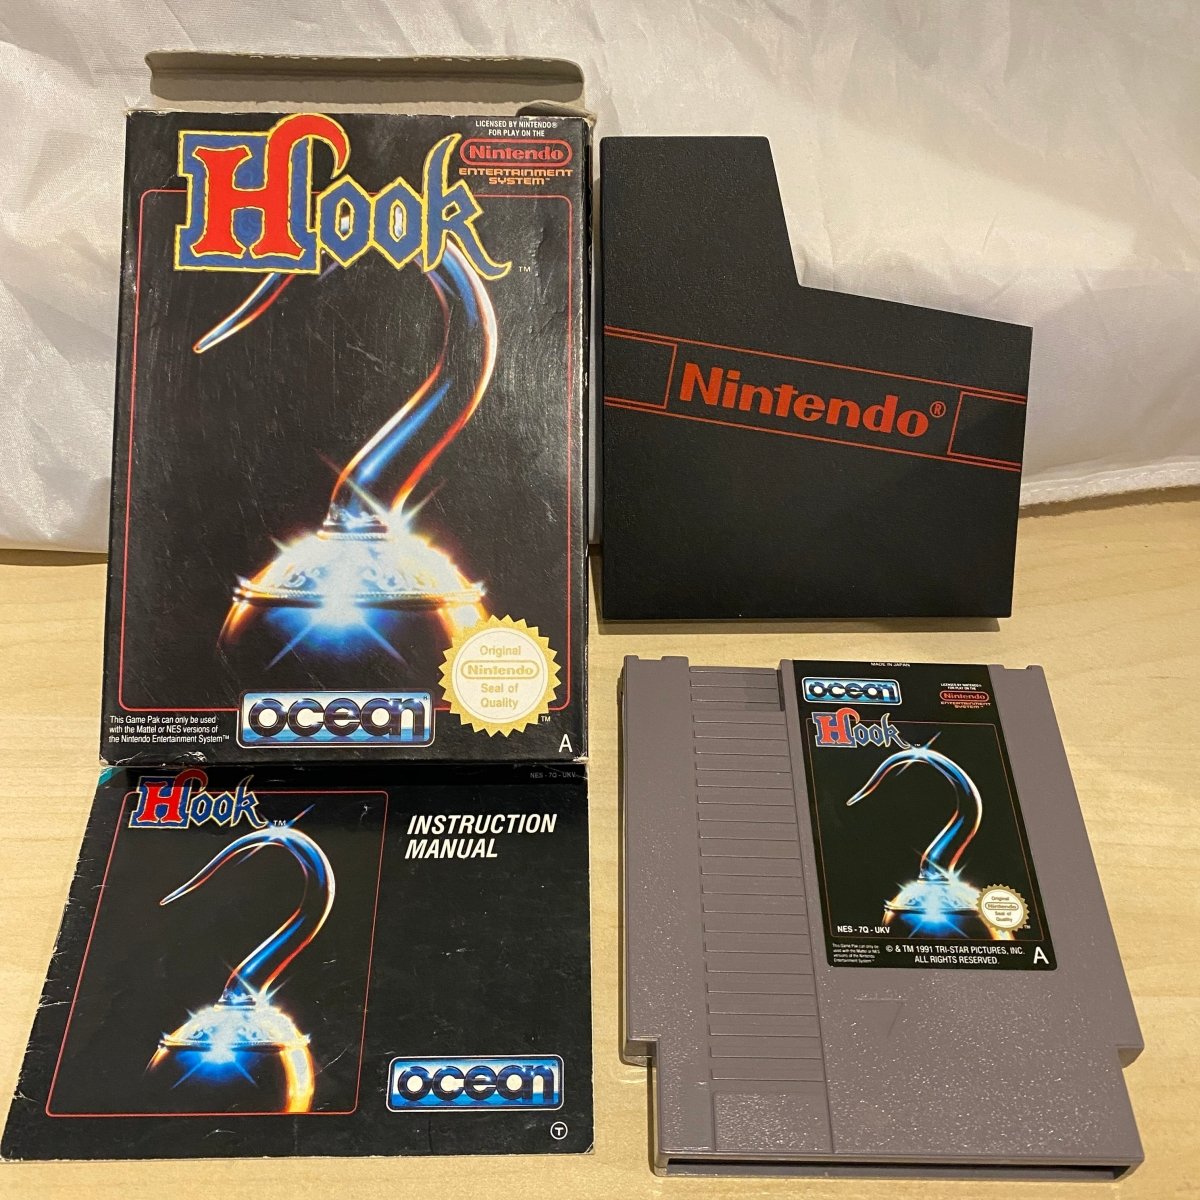 Hook Nes missing manual 22.99 8BitBeyond – retro game store uk 